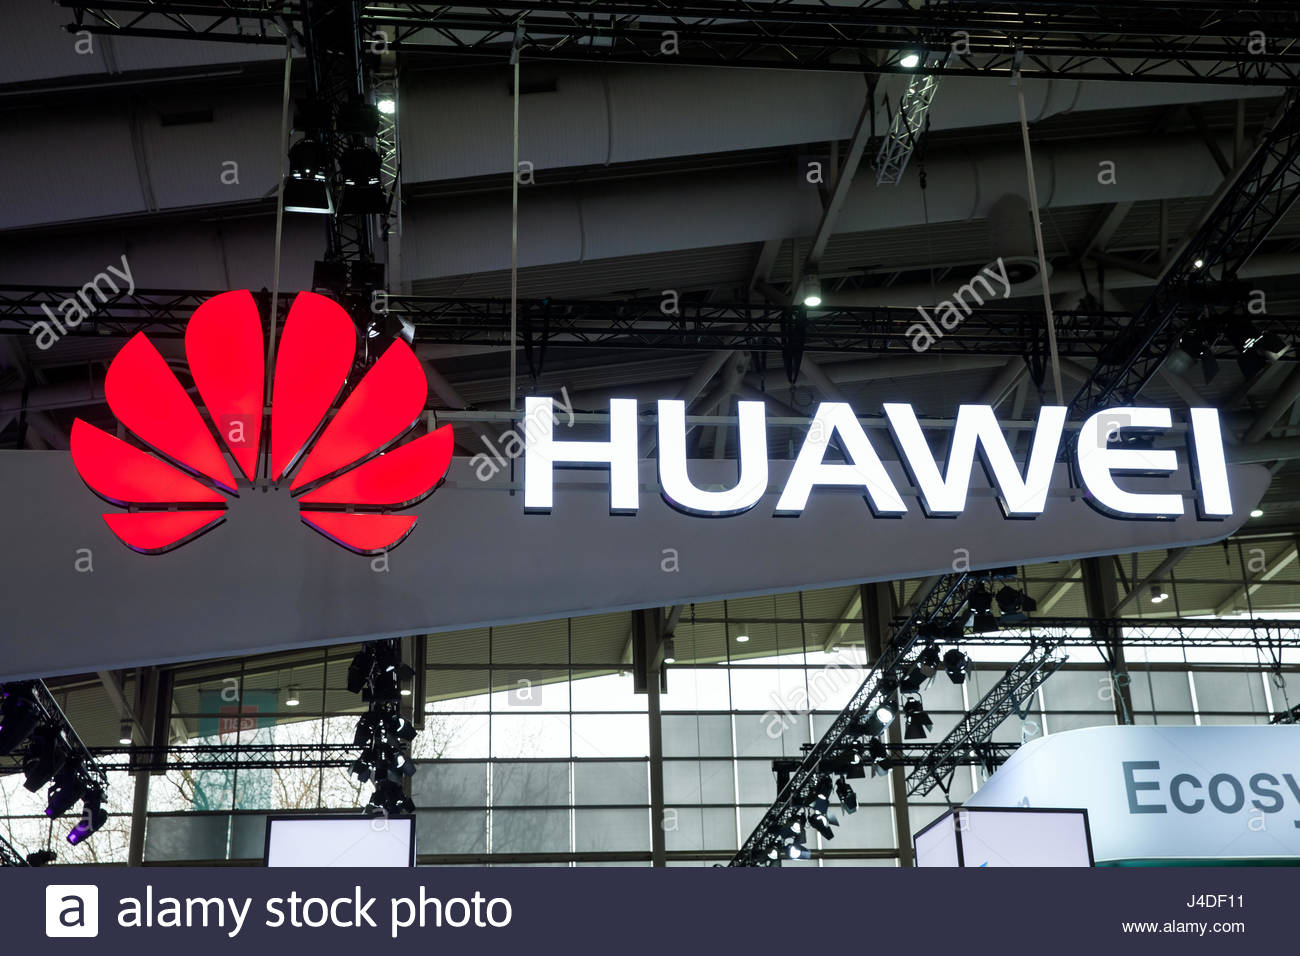 EEUU corta las alas a la compañía china Huawei